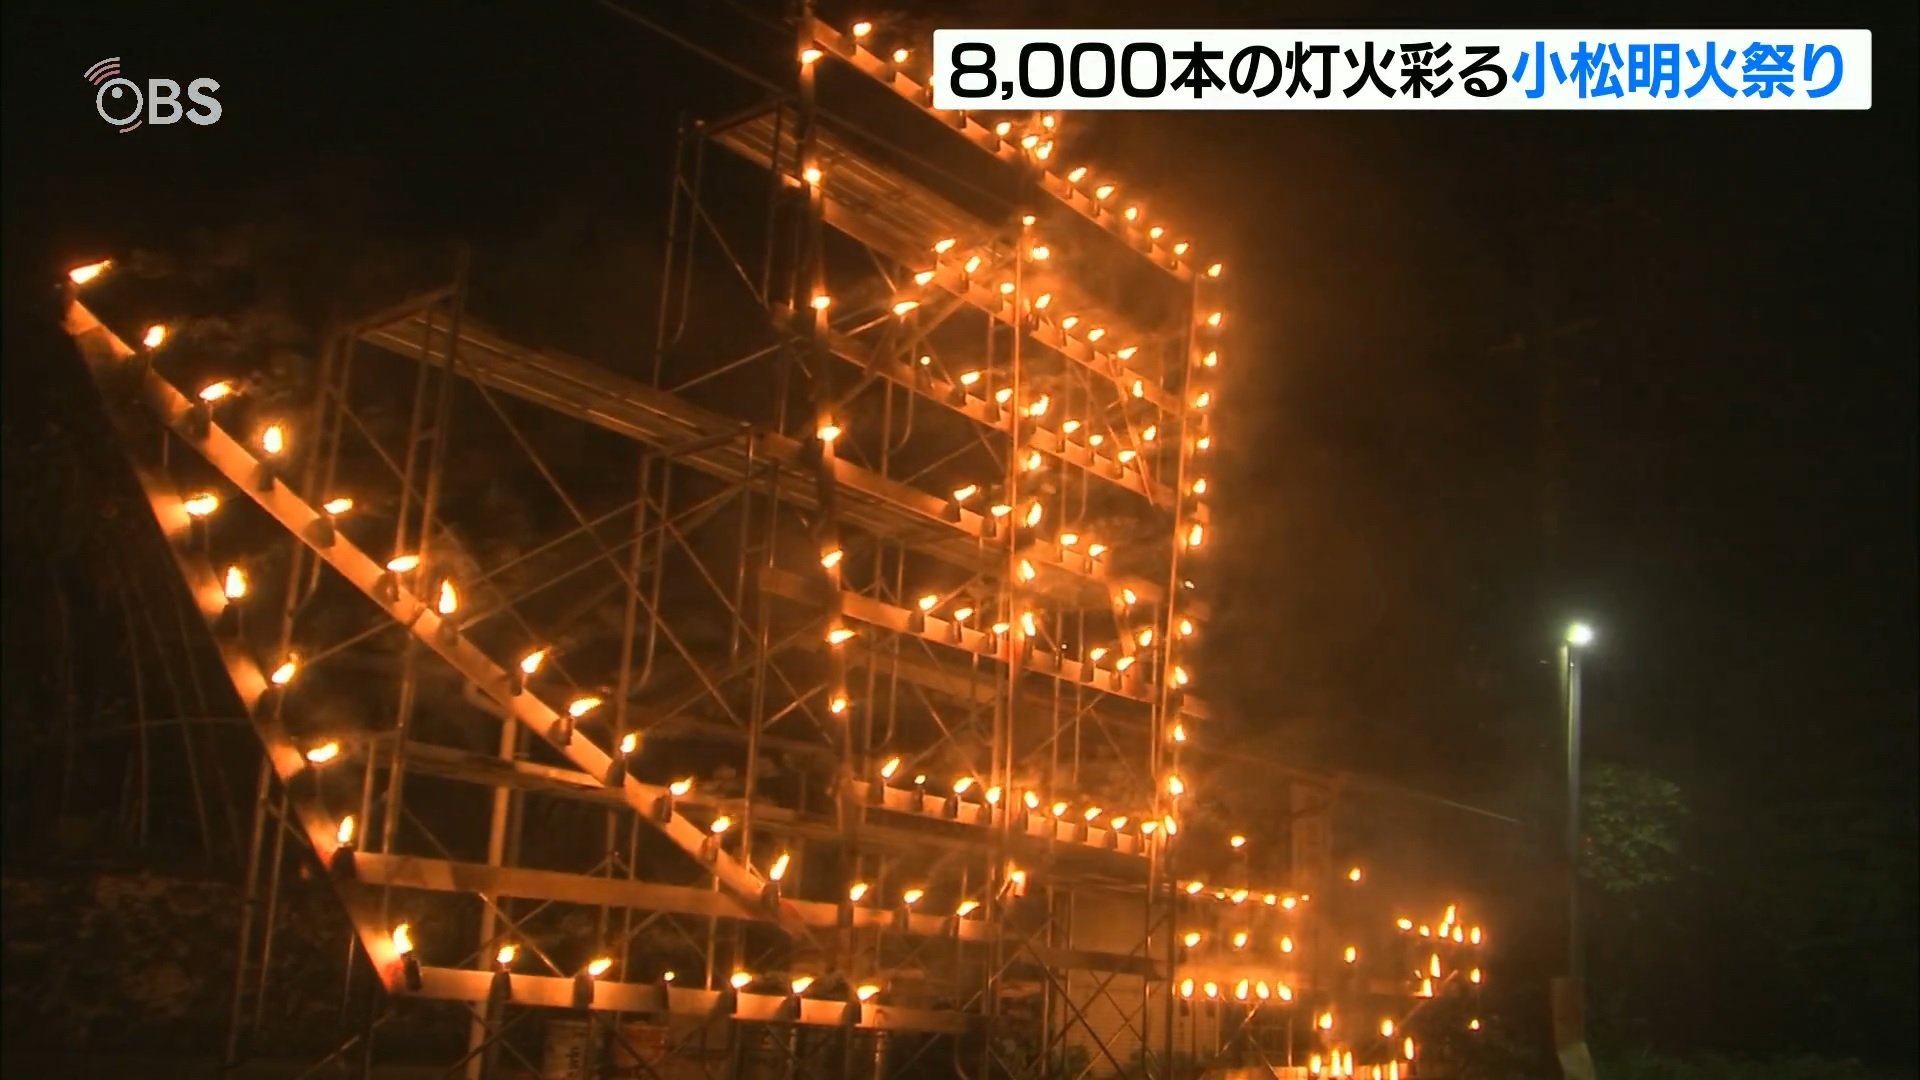 炎で彩られた宝船「小松明火祭り」田園風景に8000本の灯火 大分